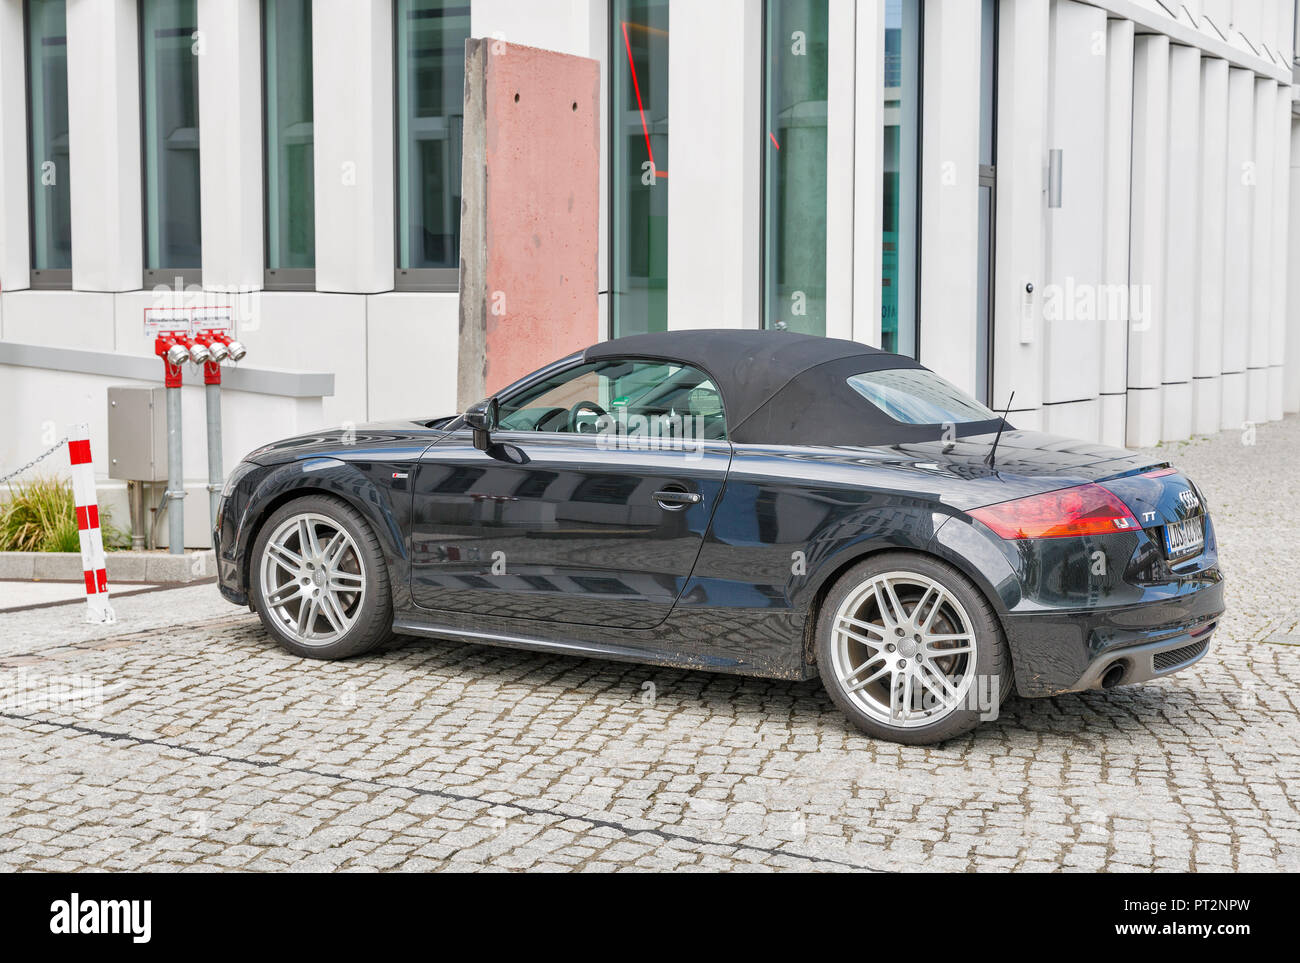 BERLIN, ALLEMAGNE - 13 juillet 2018 : Black Audy TT 2-porte voiture de sport garée au centre-ville. Audi TT est une voiture de sport sur le marché par une filiale du groupe Volkswagen Banque D'Images